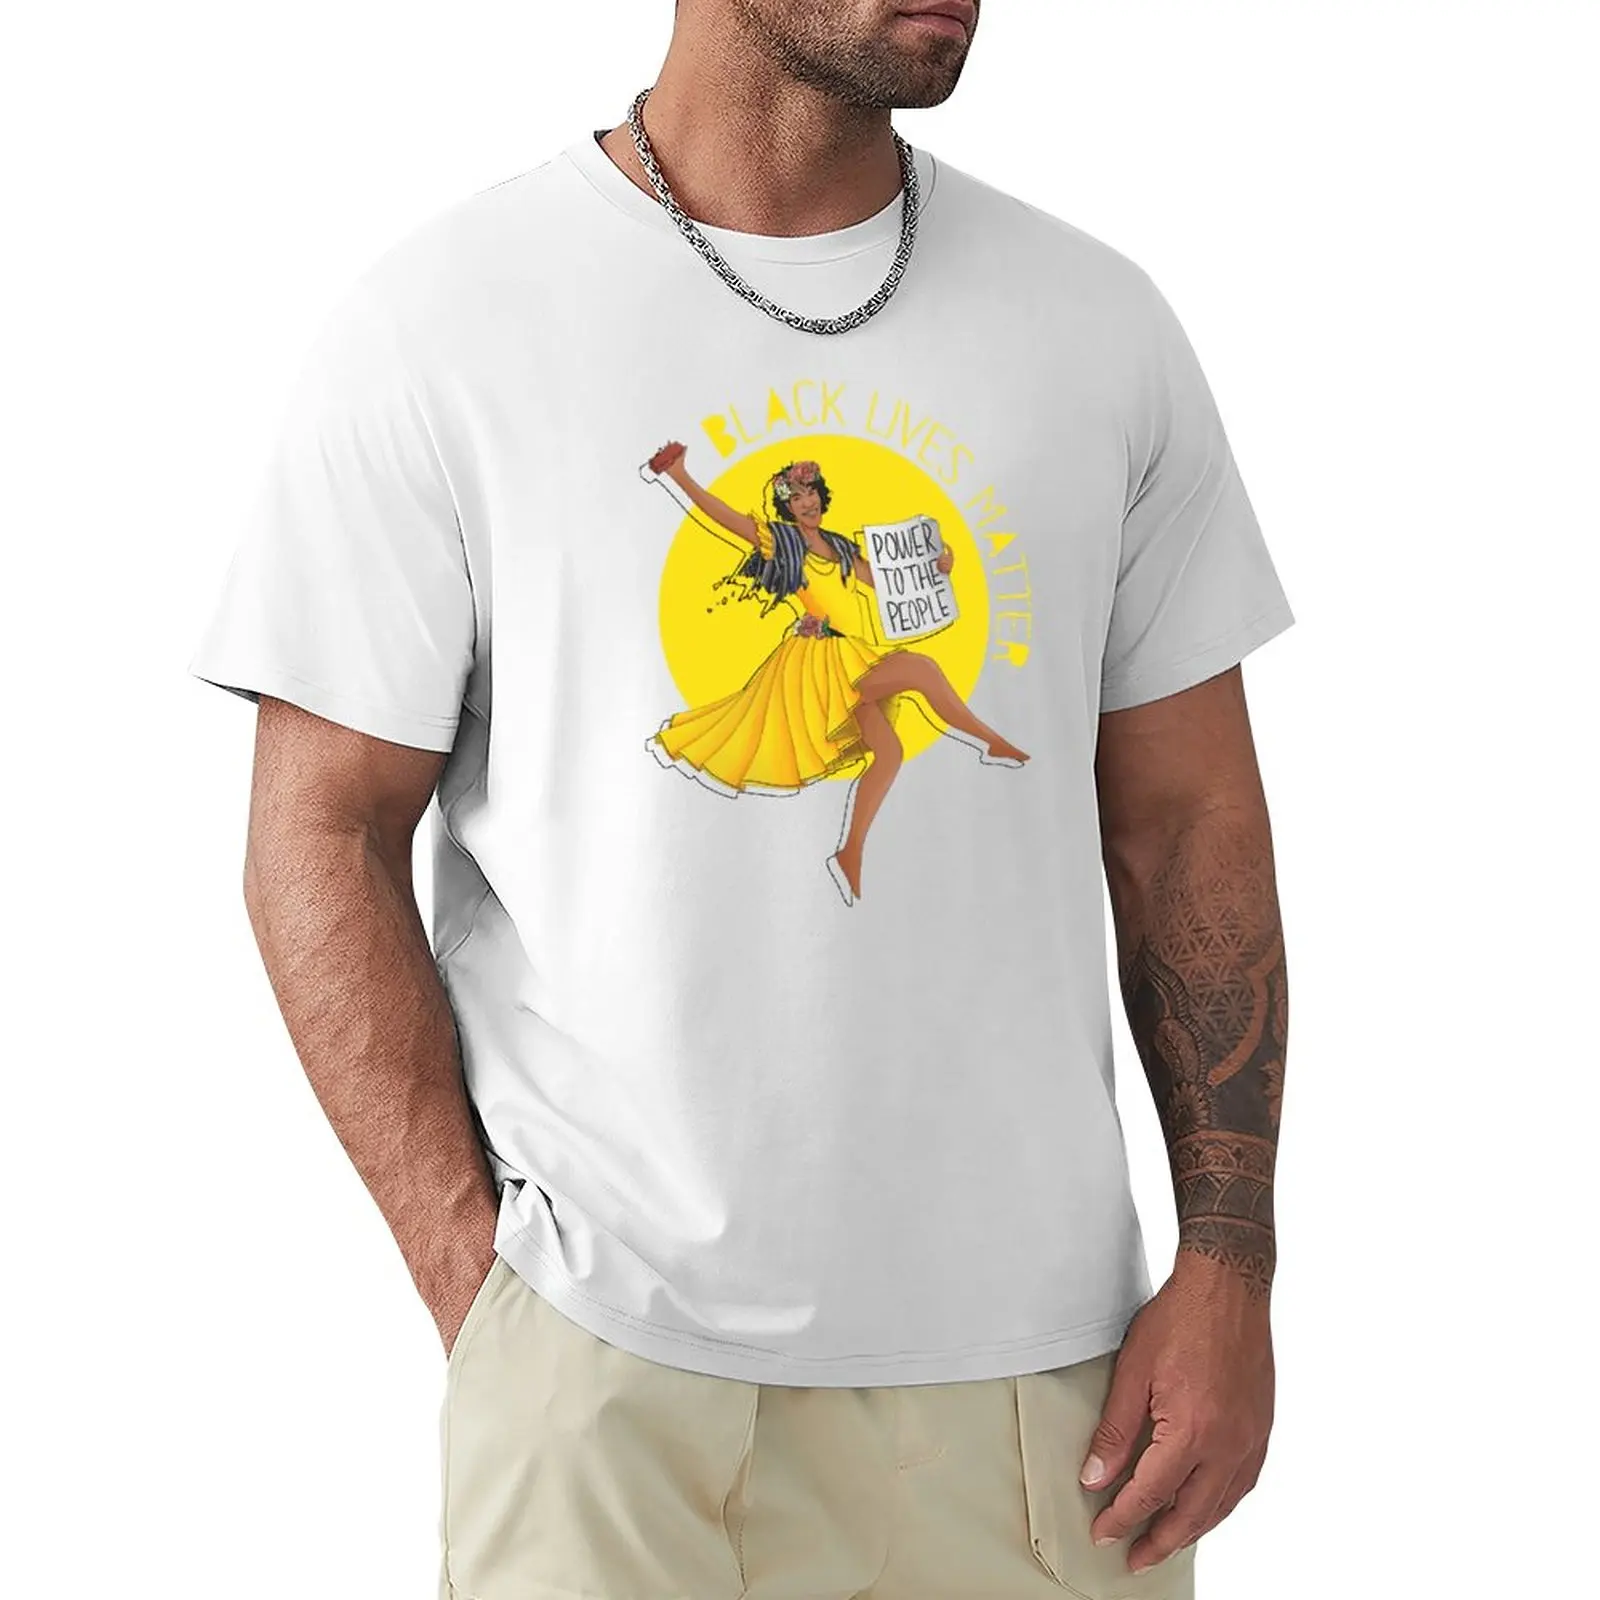 Футболка Marsha P Johnson BLM 2020, футболки для мальчиков, белые, черные, мужские футболки